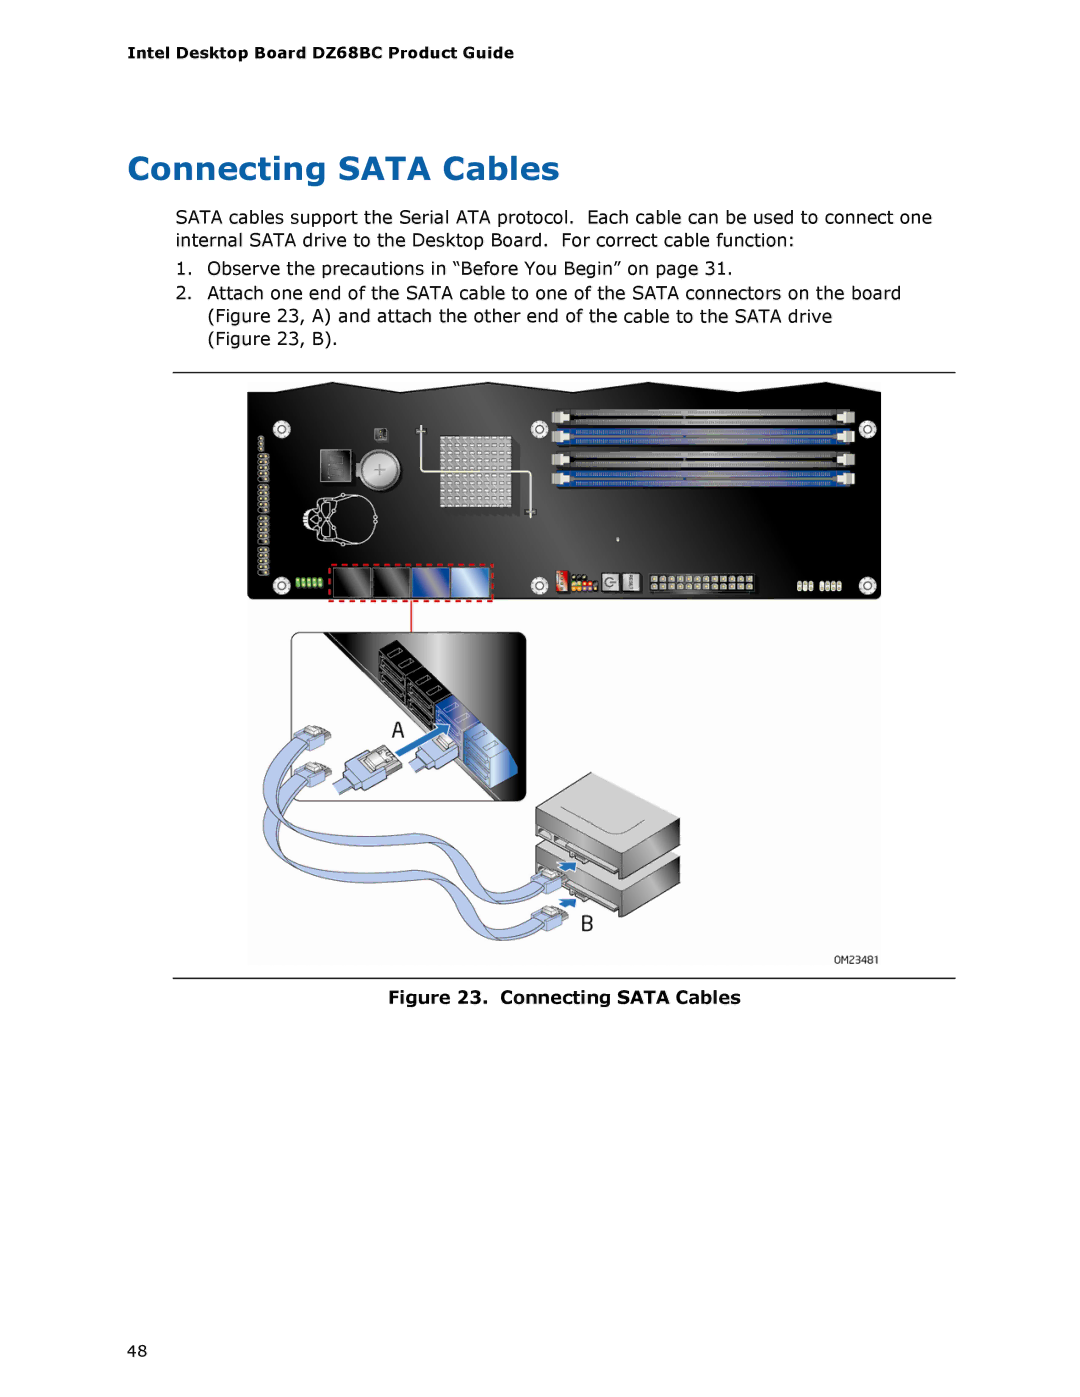 Intel BLKDZ68BC manual Connecting Sata Cables 